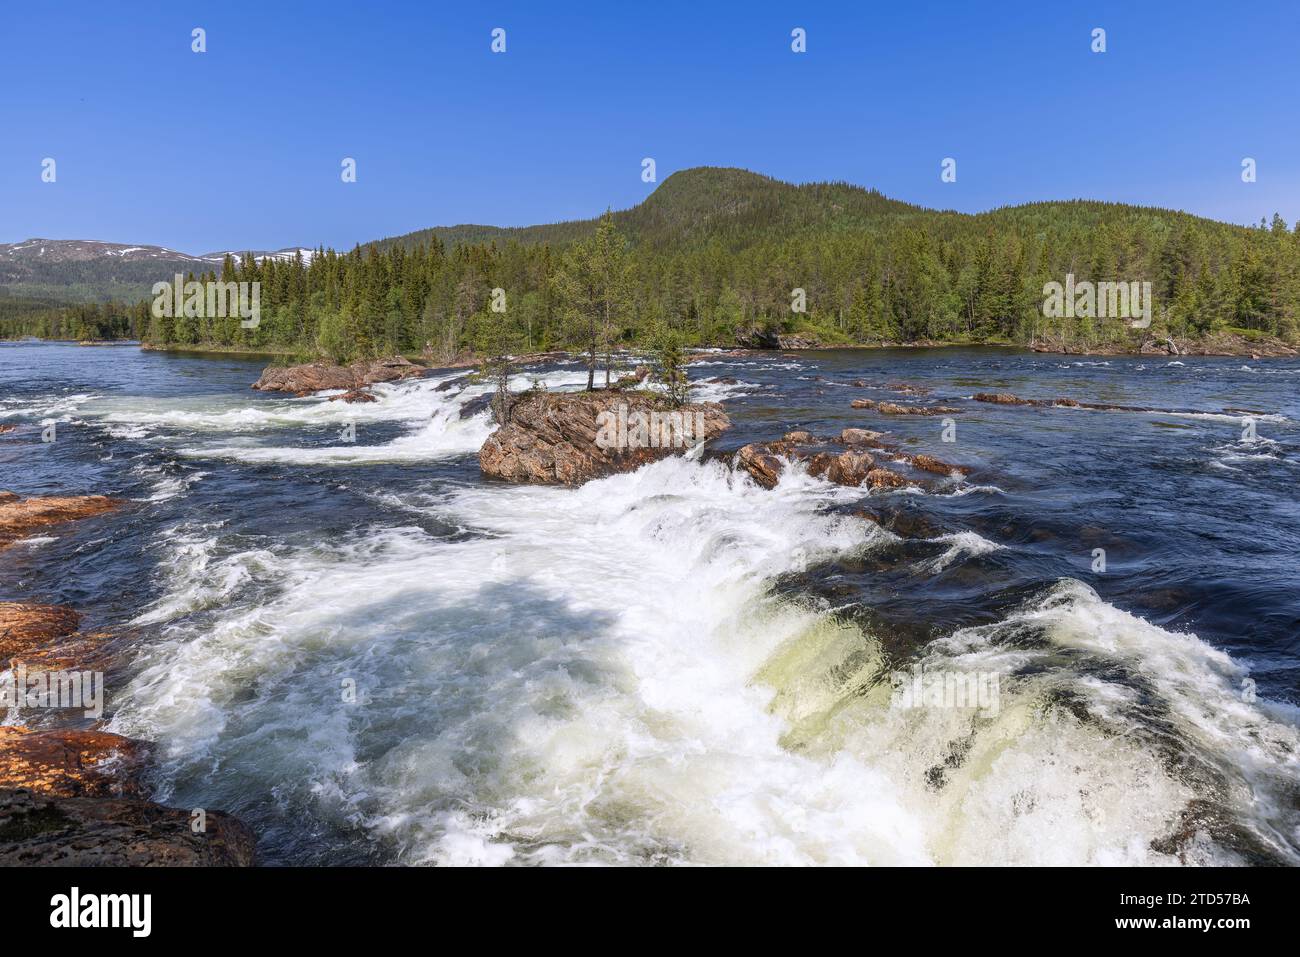 Une vue estivale de la rivière Namsen à Namsskogan, Trondelag, Norvège, avec des eaux en cascade au-dessus de grands rochers, où les arbres solitaires prospèrent, ensemble Banque D'Images